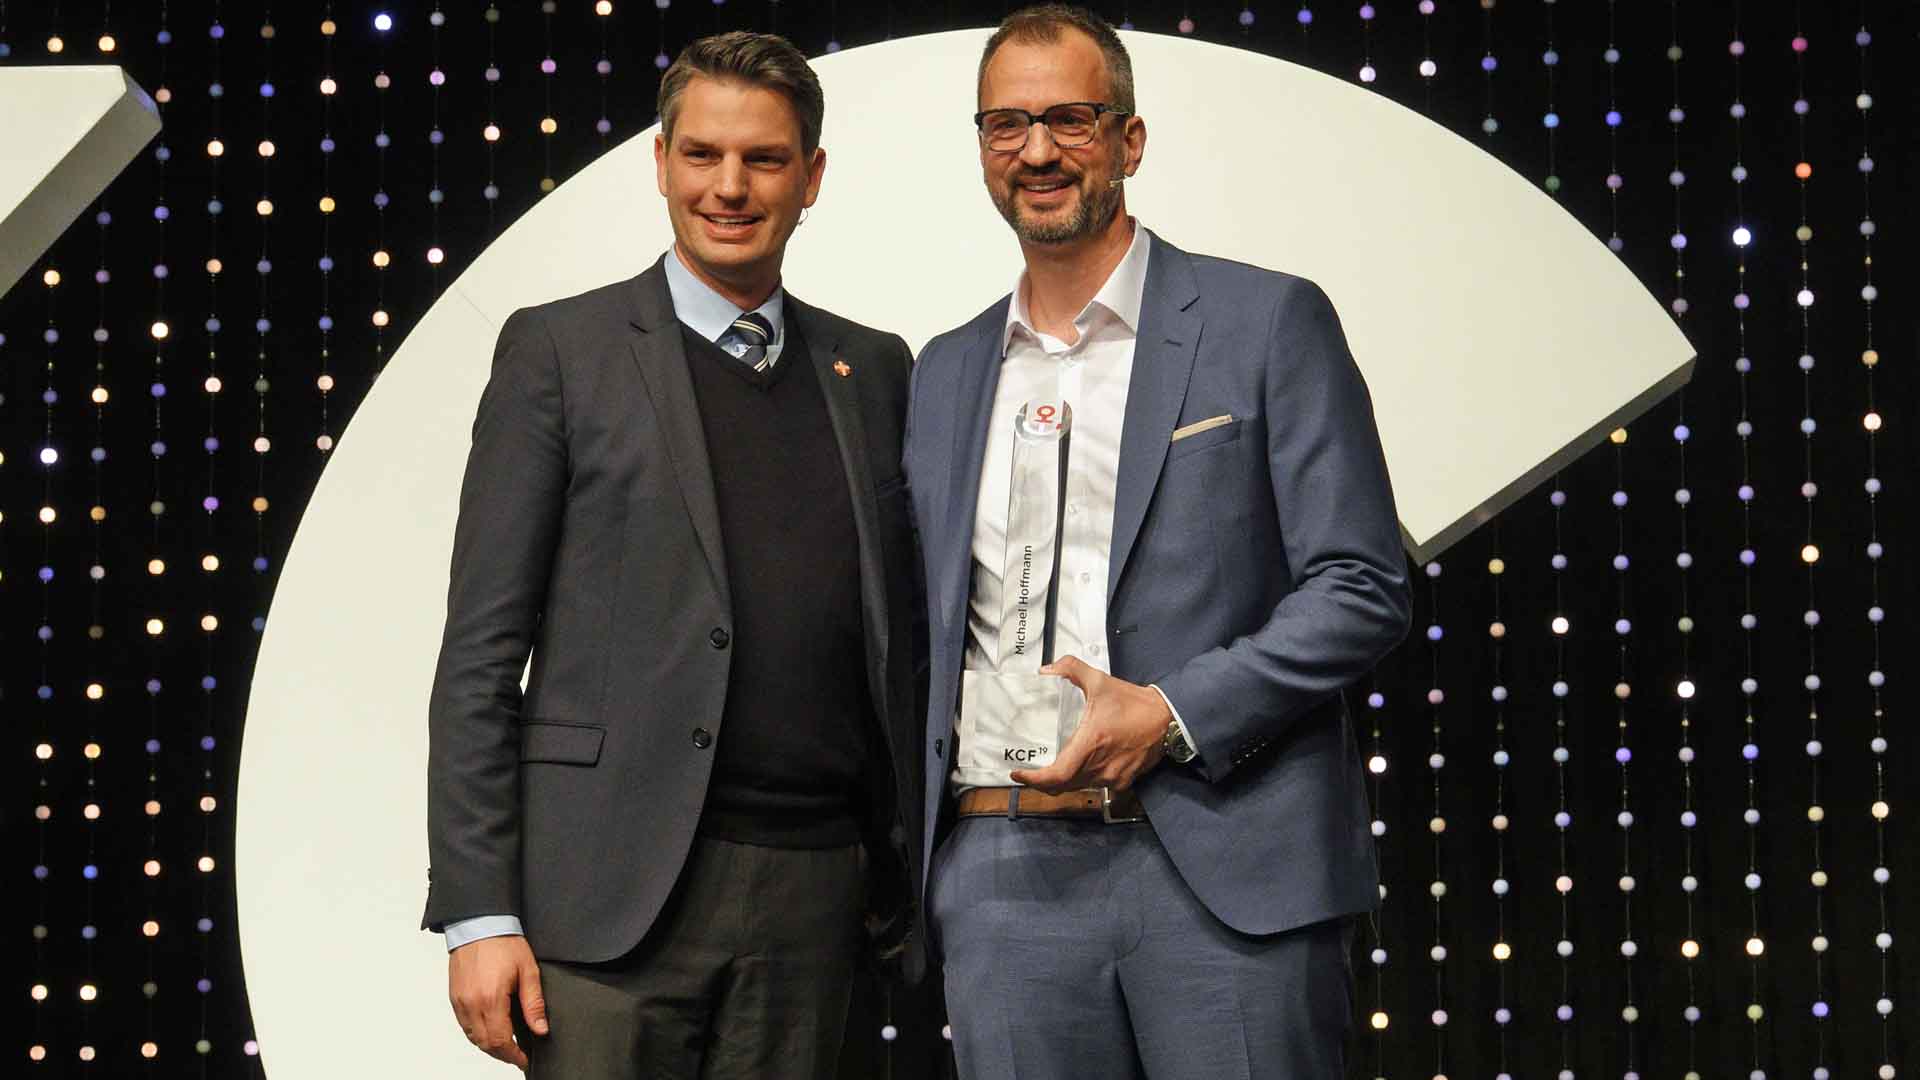 KcF-Vorstandsmitglied Timo Plutschinski (l.) überreichte Michael Hoffmann den Wertepreis